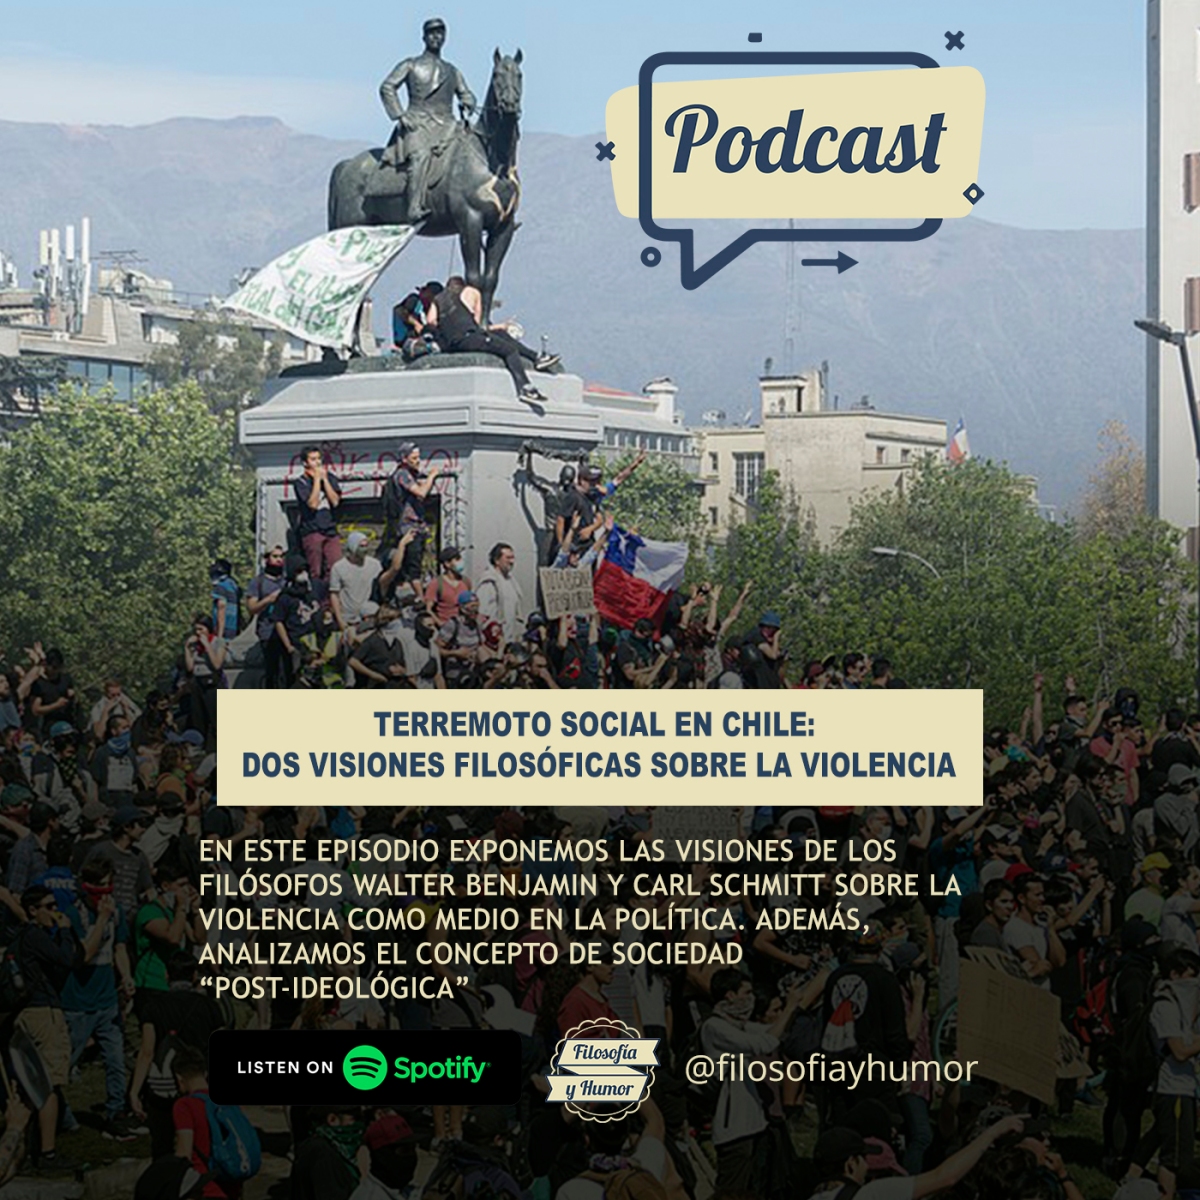 Terremoto social en Chile: dos visiones filosóficas sobre la violencia